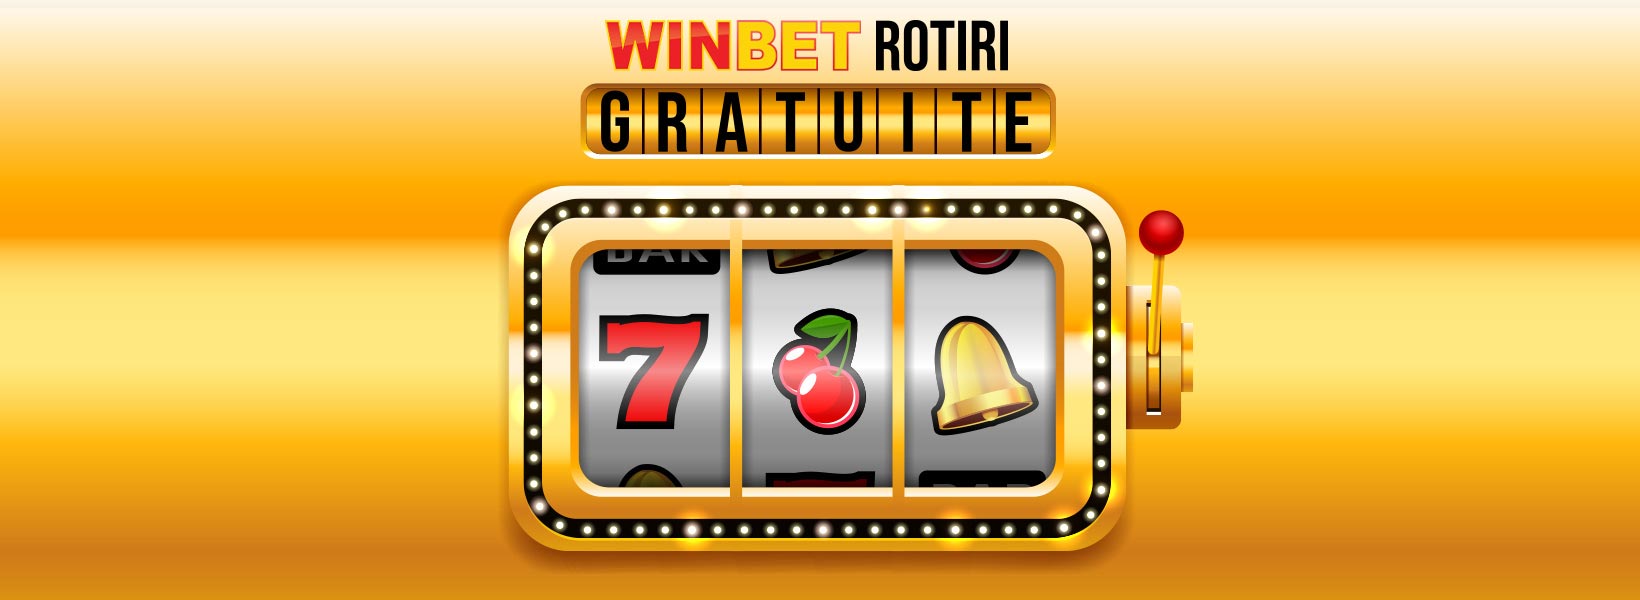 🥇 Bonus fără depunere – Câștigă GRATIS la casino! 🤑